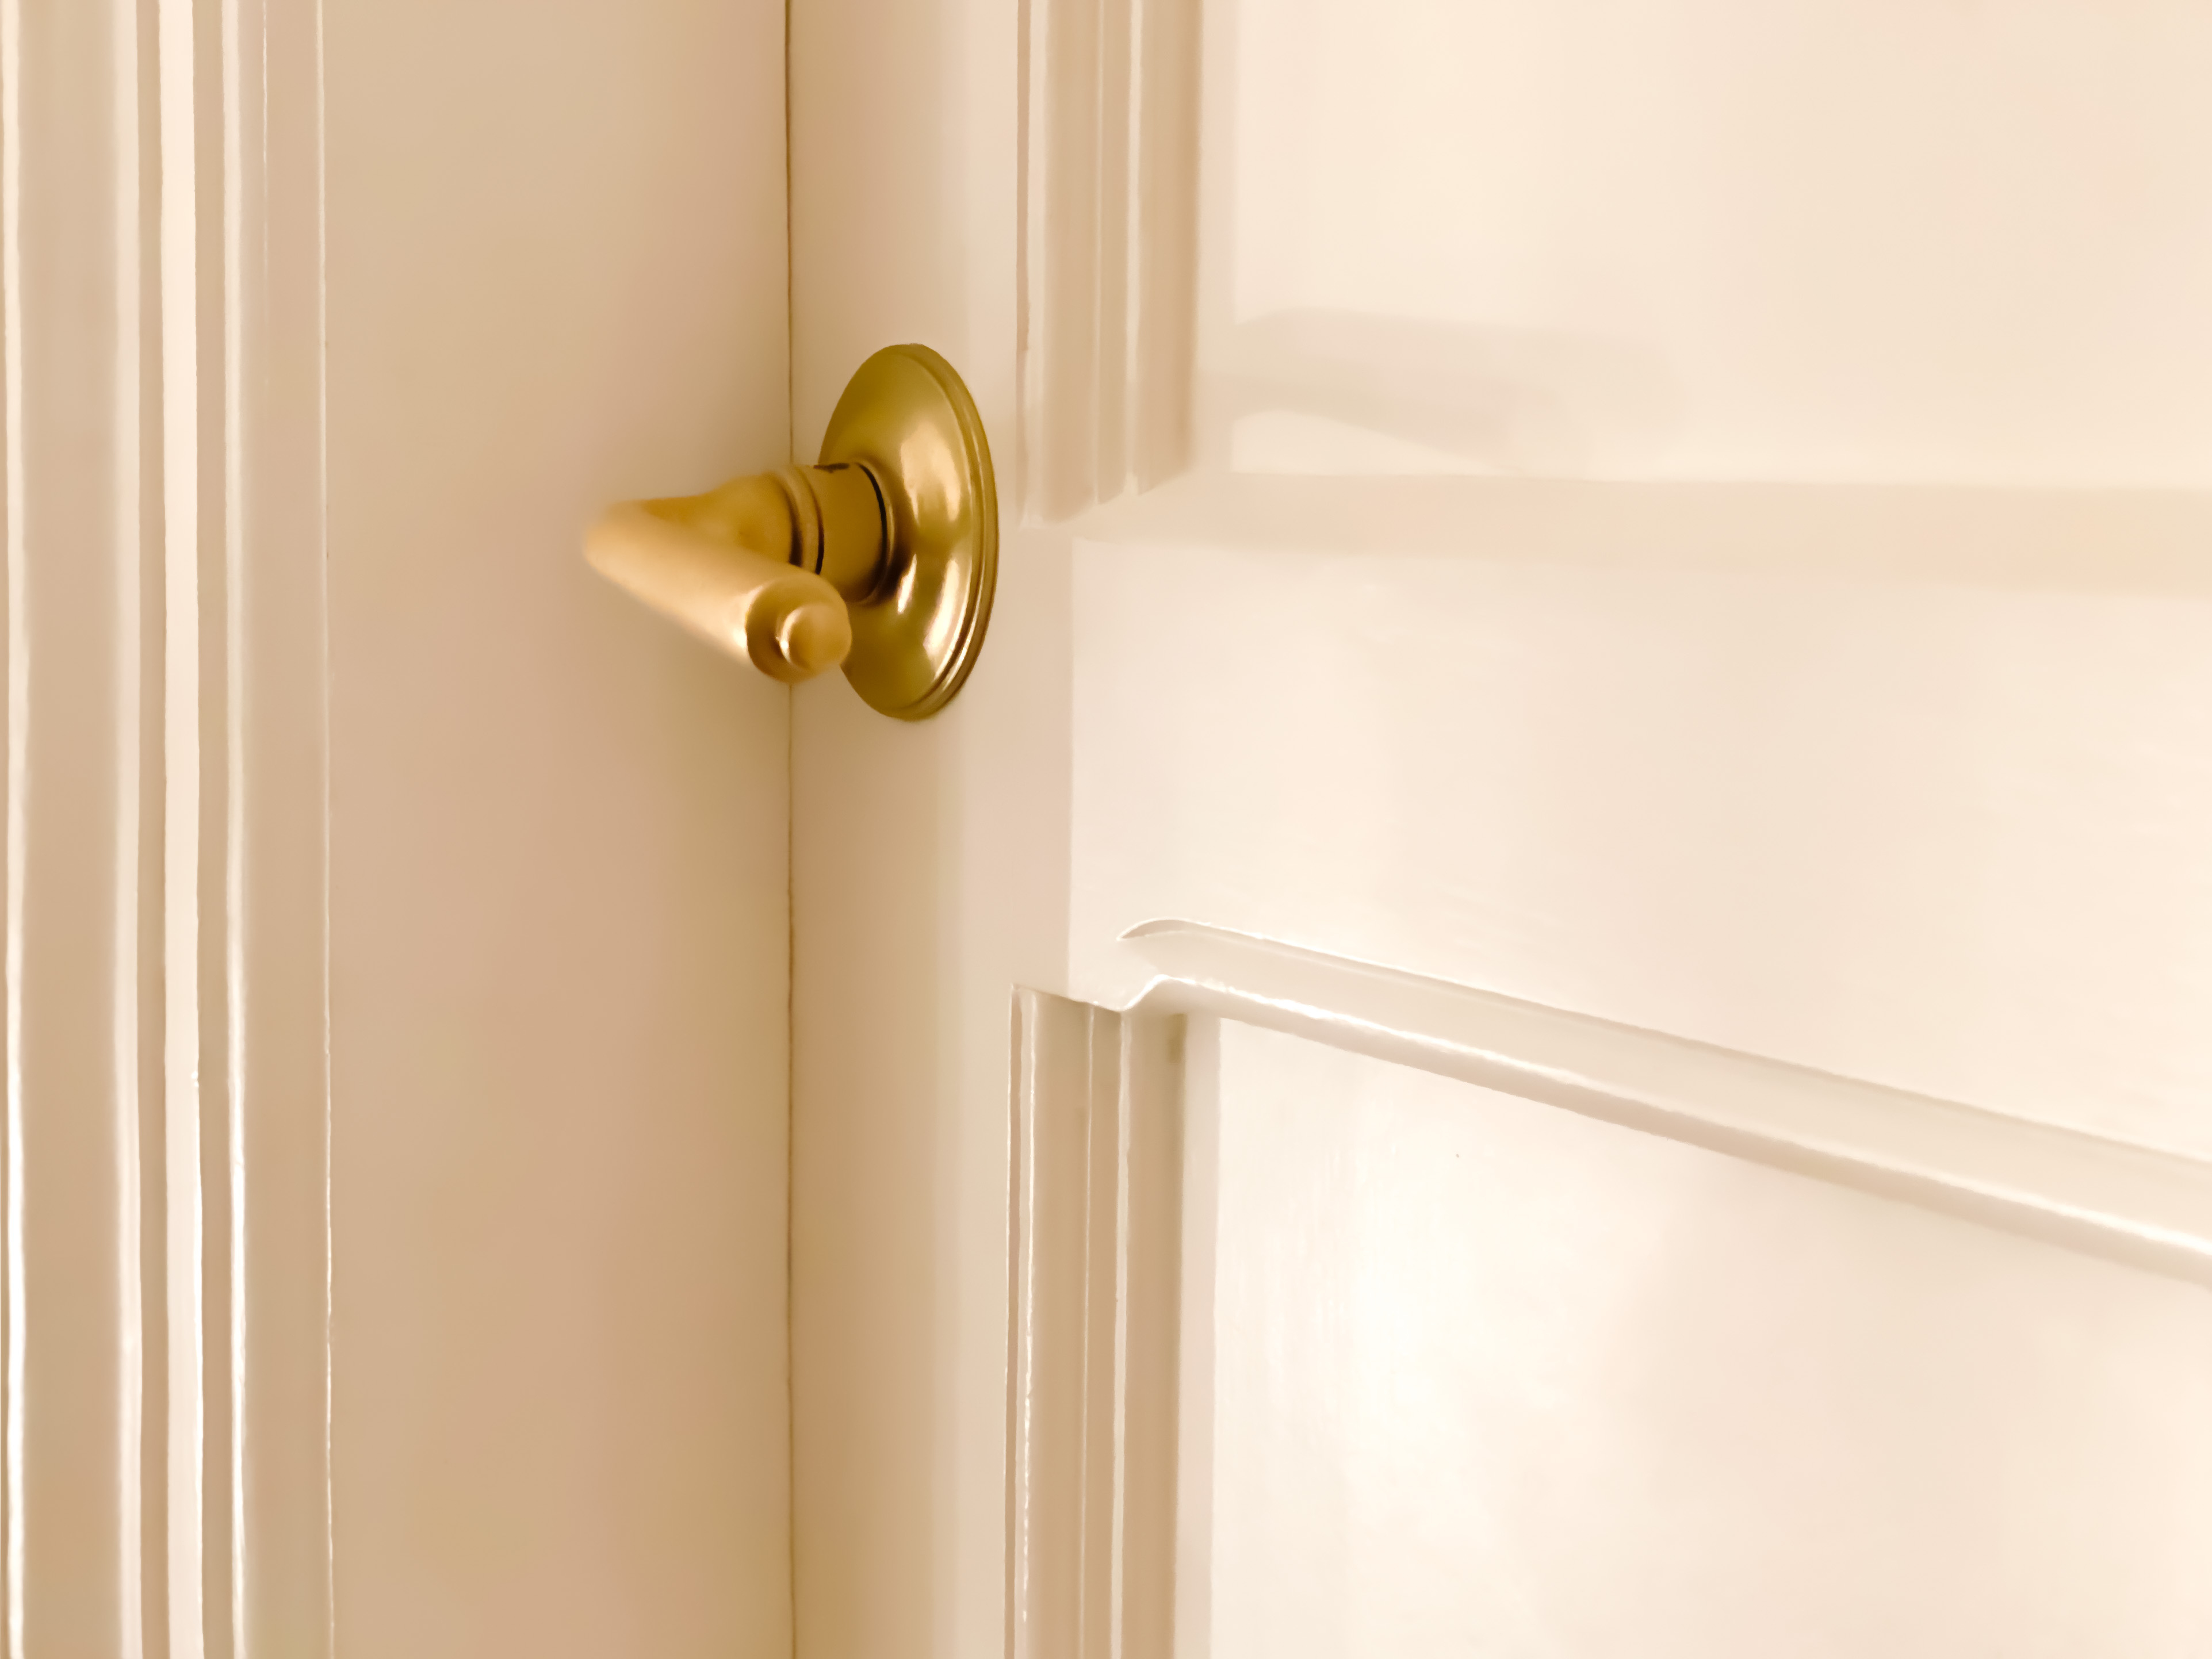 A gold door handle with a white door